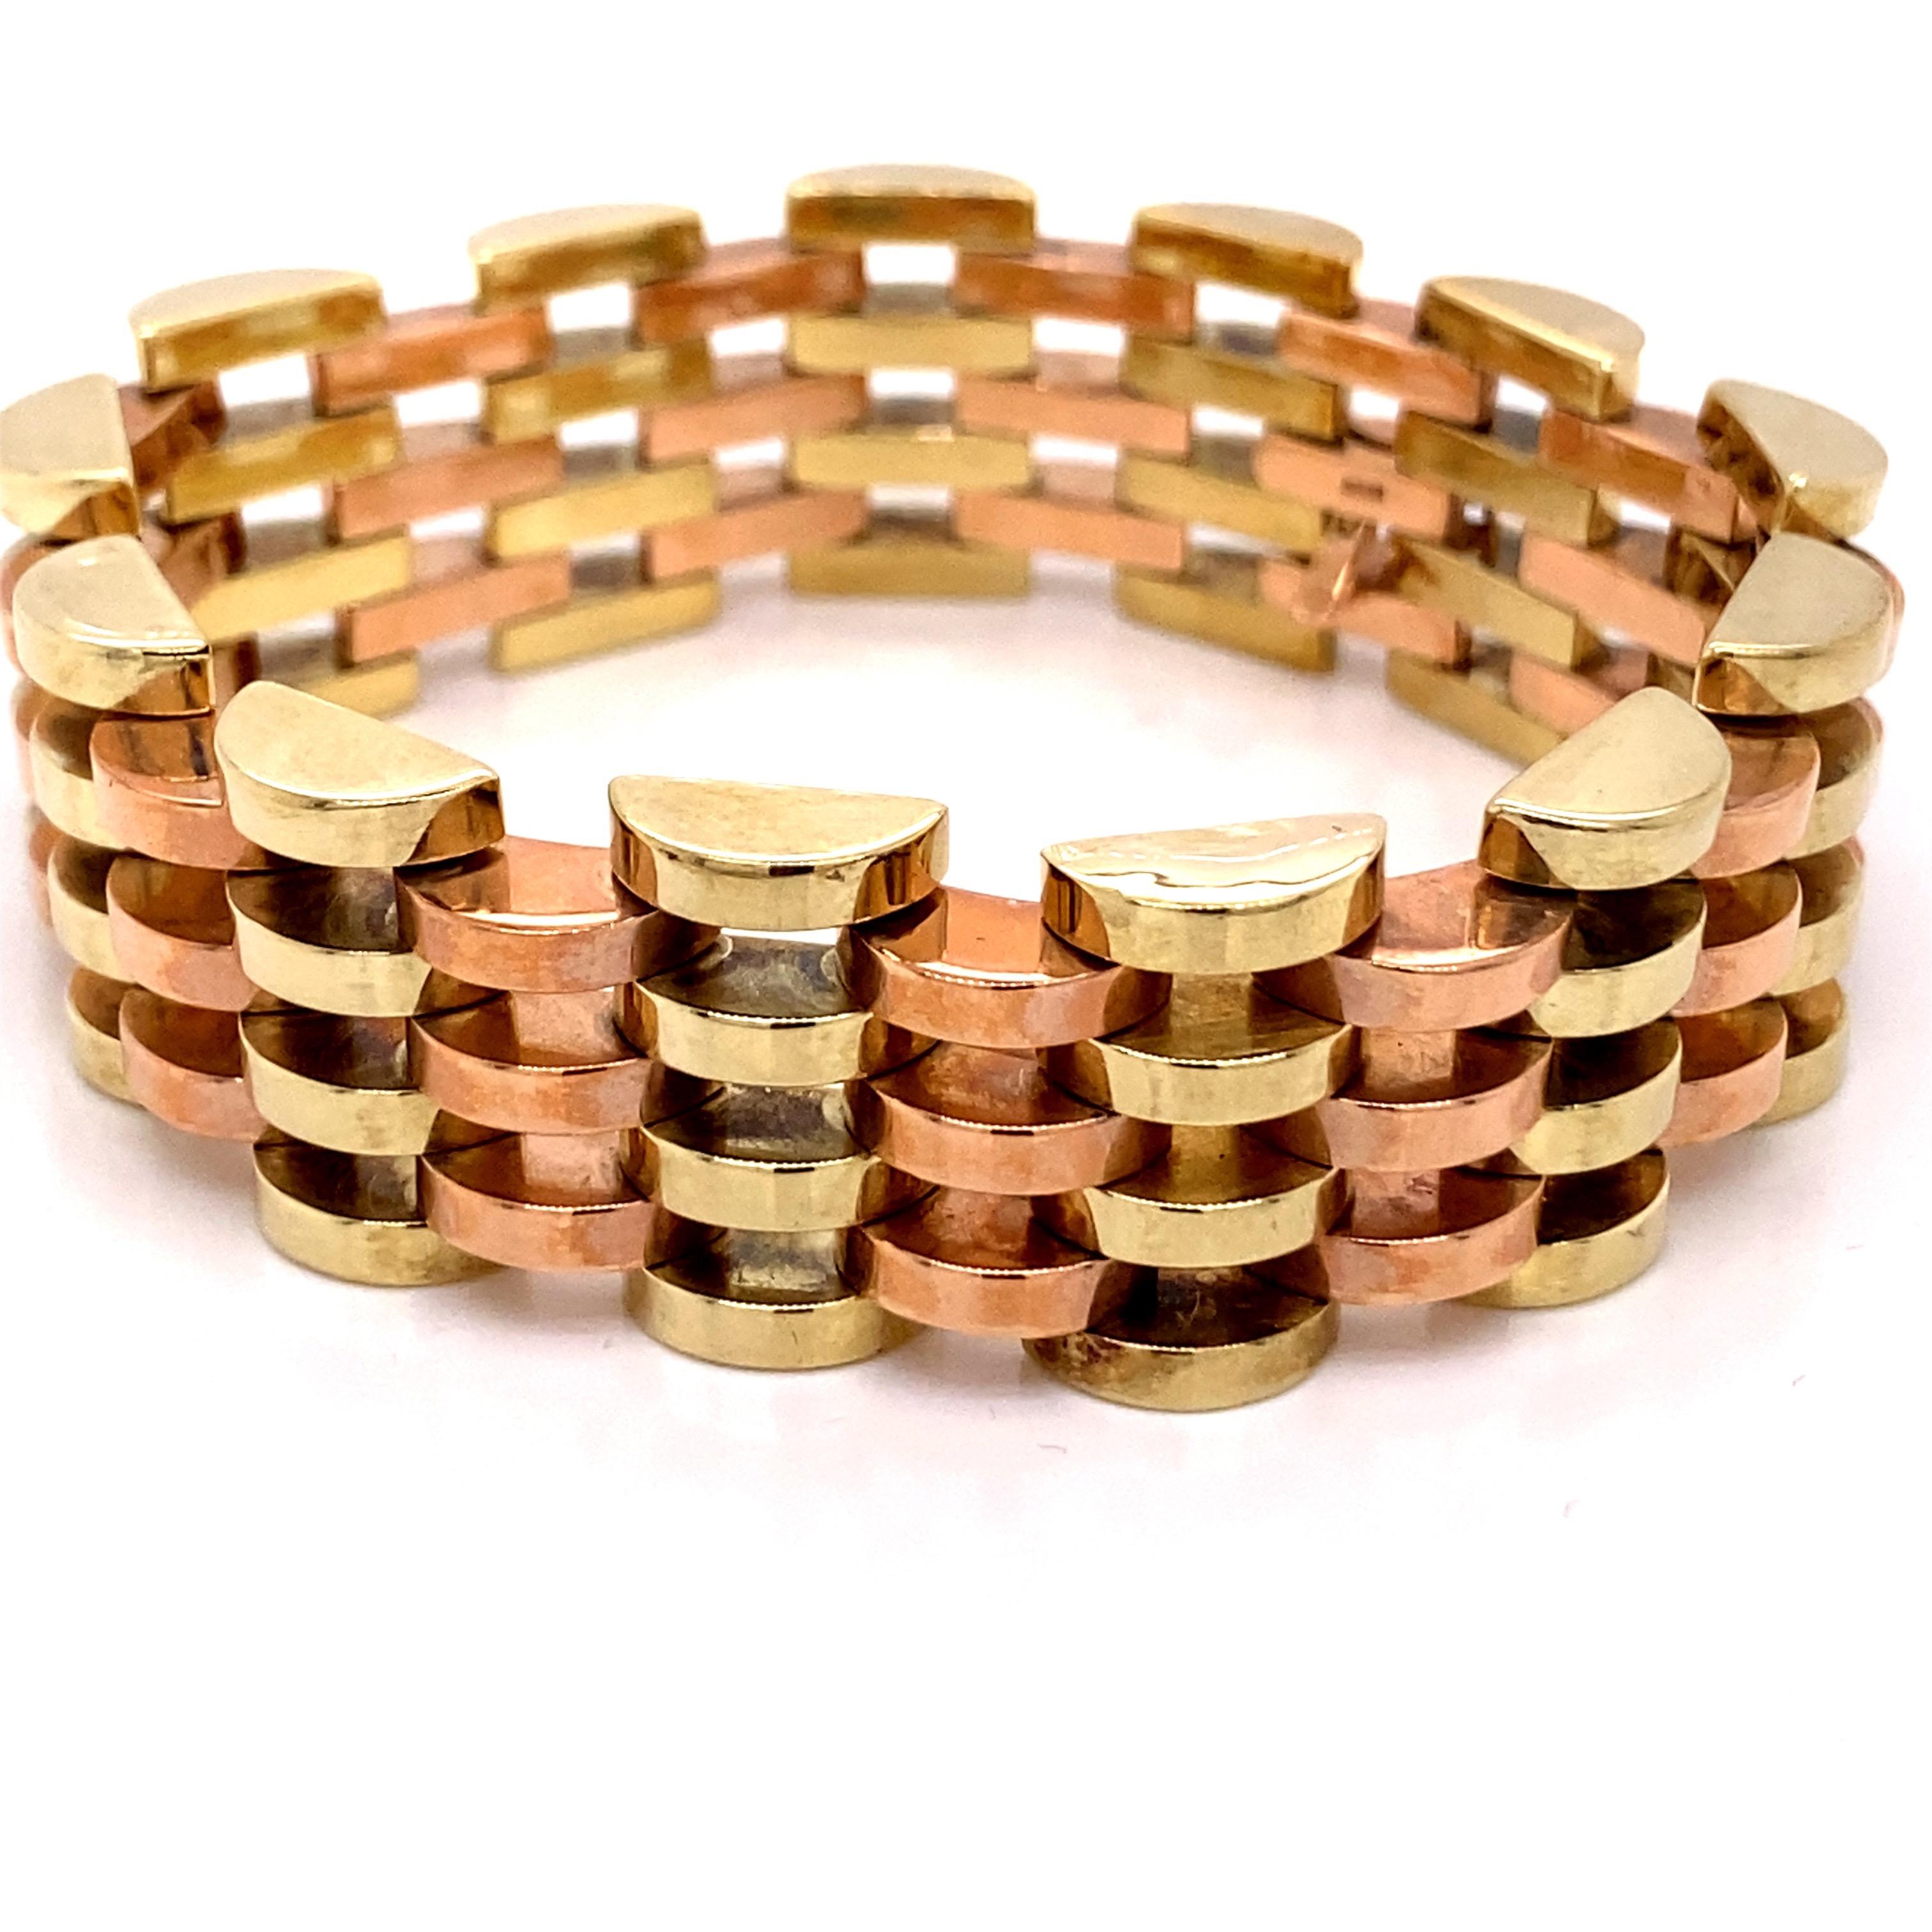 Vintage 1980s 14K Rose Gold und Grüngold Wide Link Bracelet - Das Armband misst 7,5 Zoll lang und 0,75 Zoll breit und verfügt über einen versteckten Verschluss für einen kontinuierlichen Stil. Das Gewicht des Armbands beträgt 46.40 Gramm.